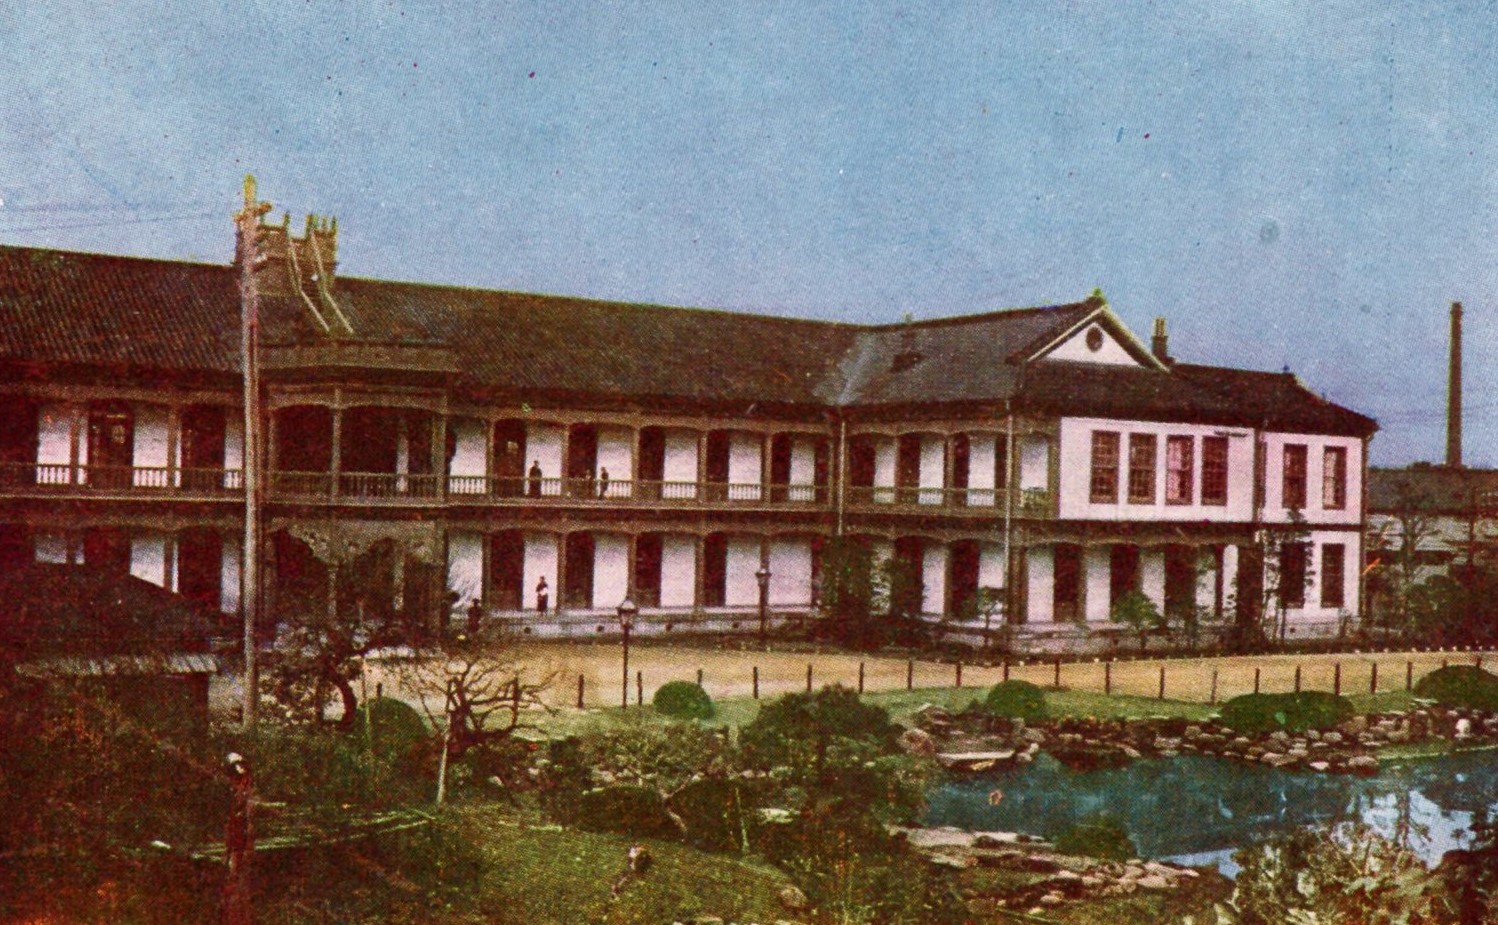 広大な敷地に建つ昔の大蔵省の2階建ての建物外観を写した写真